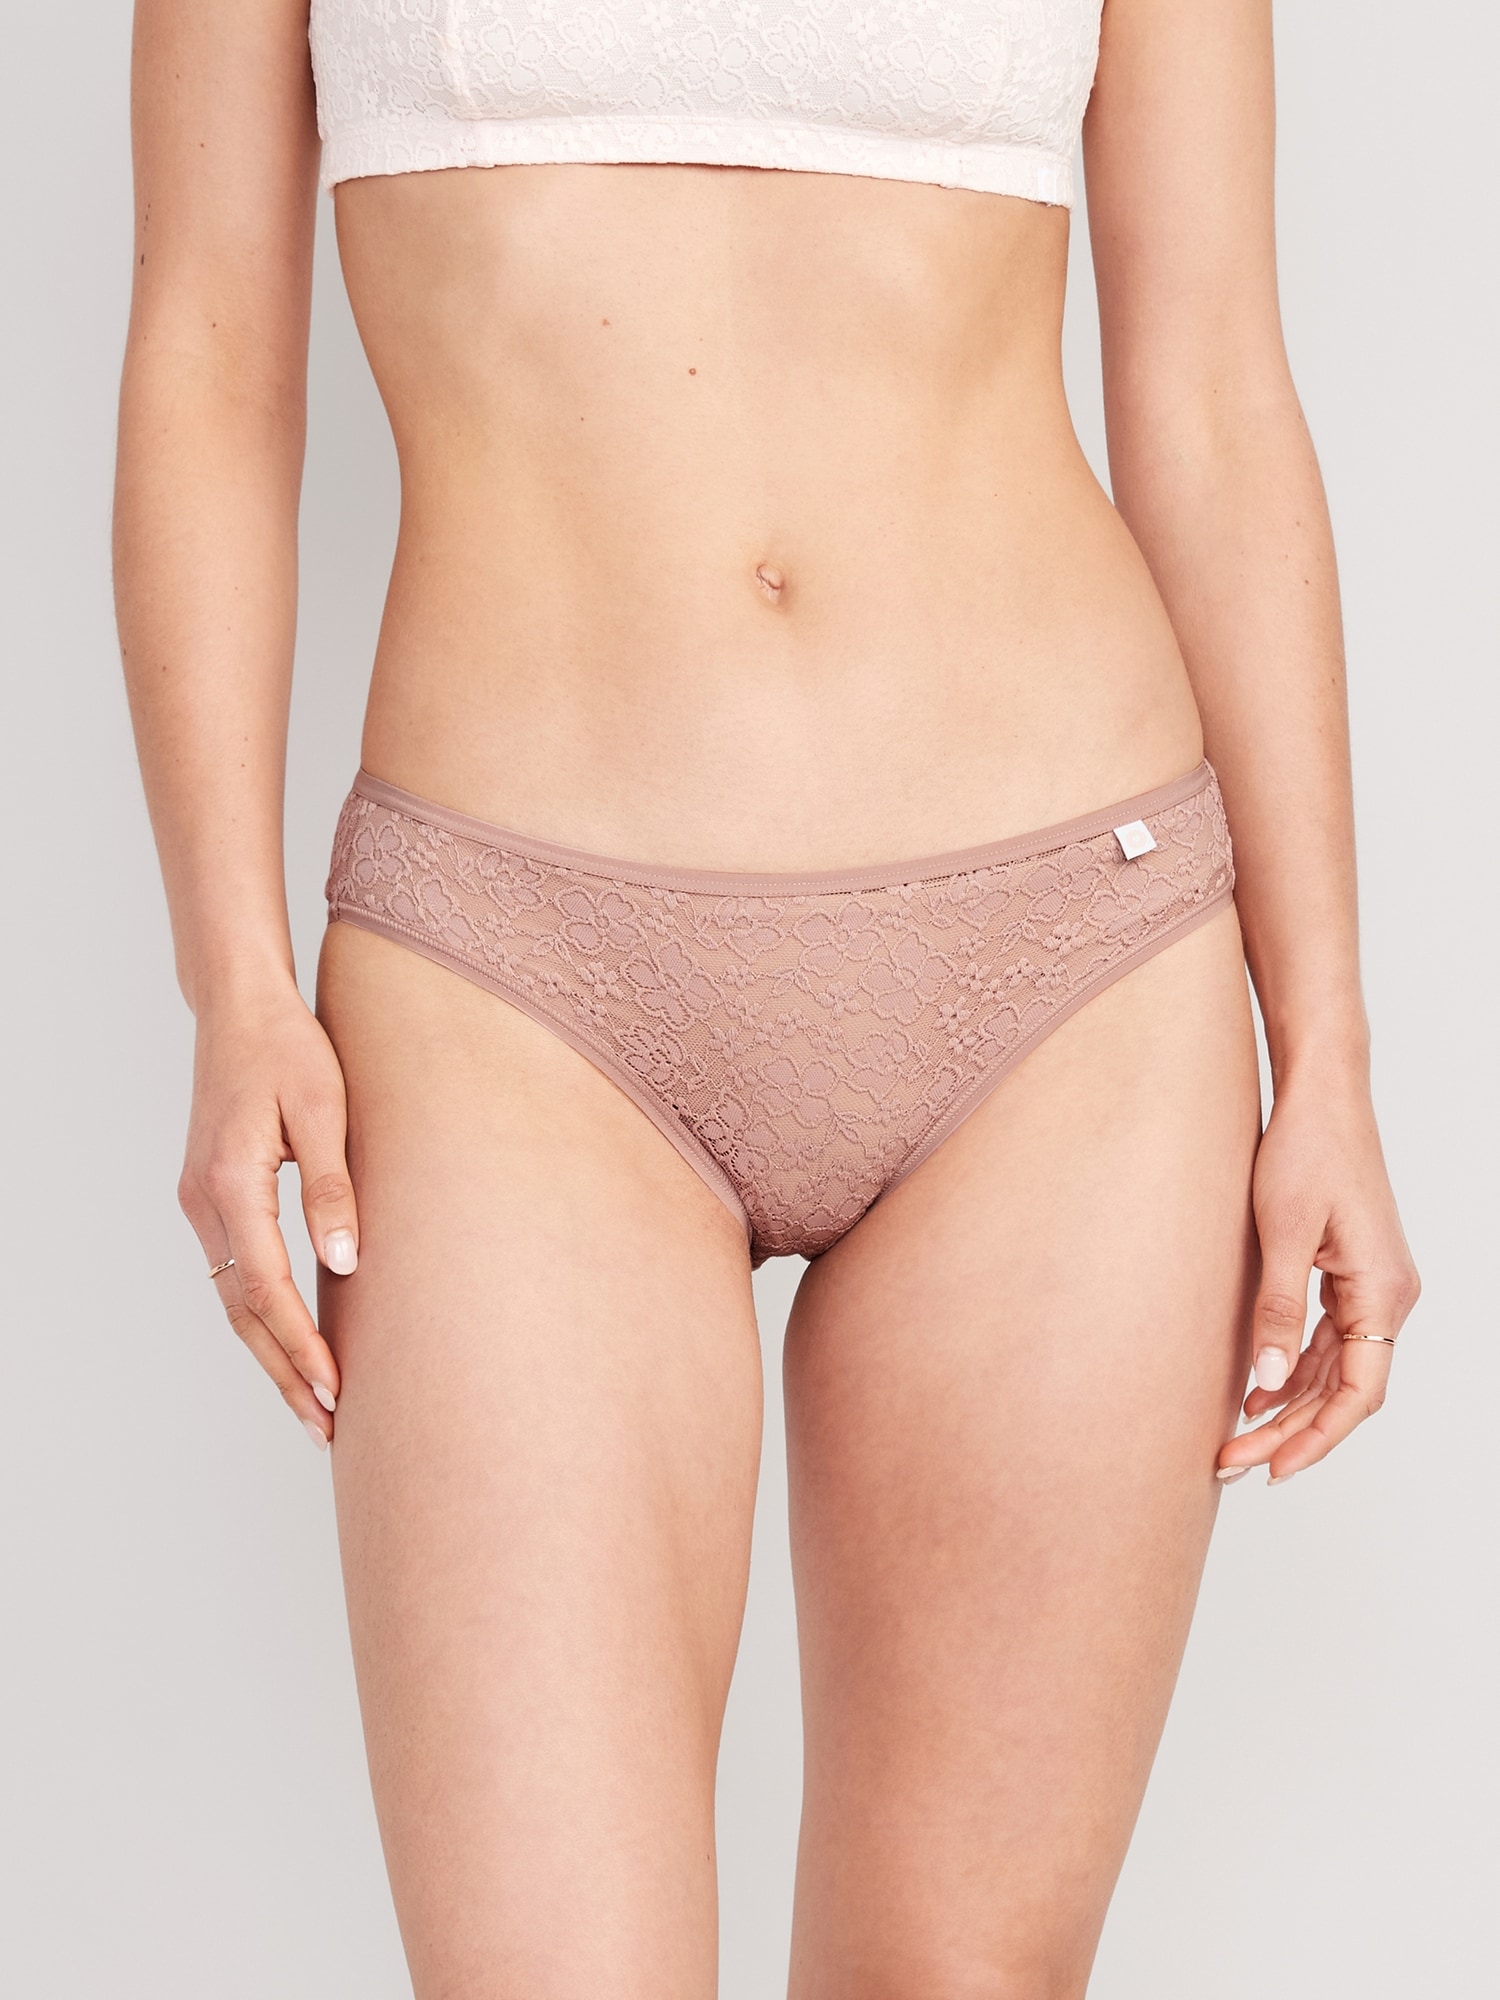 Nylon Spandex Underwear